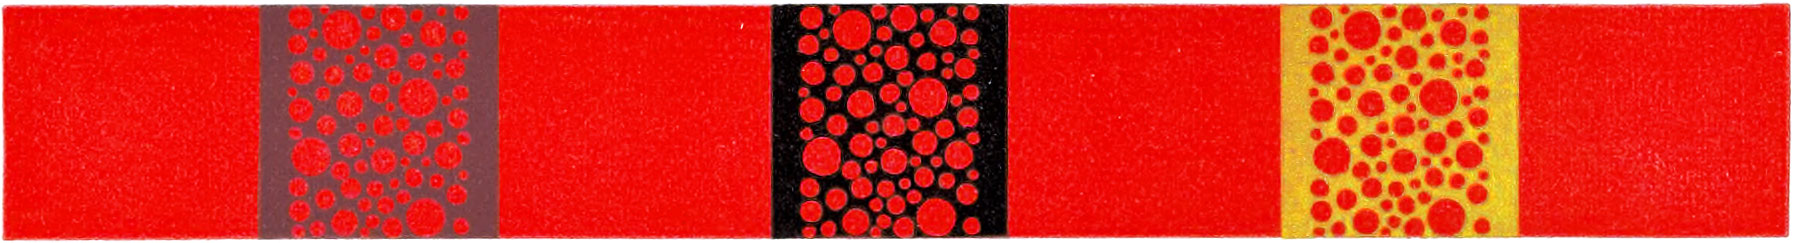 Circular patterns printed on red